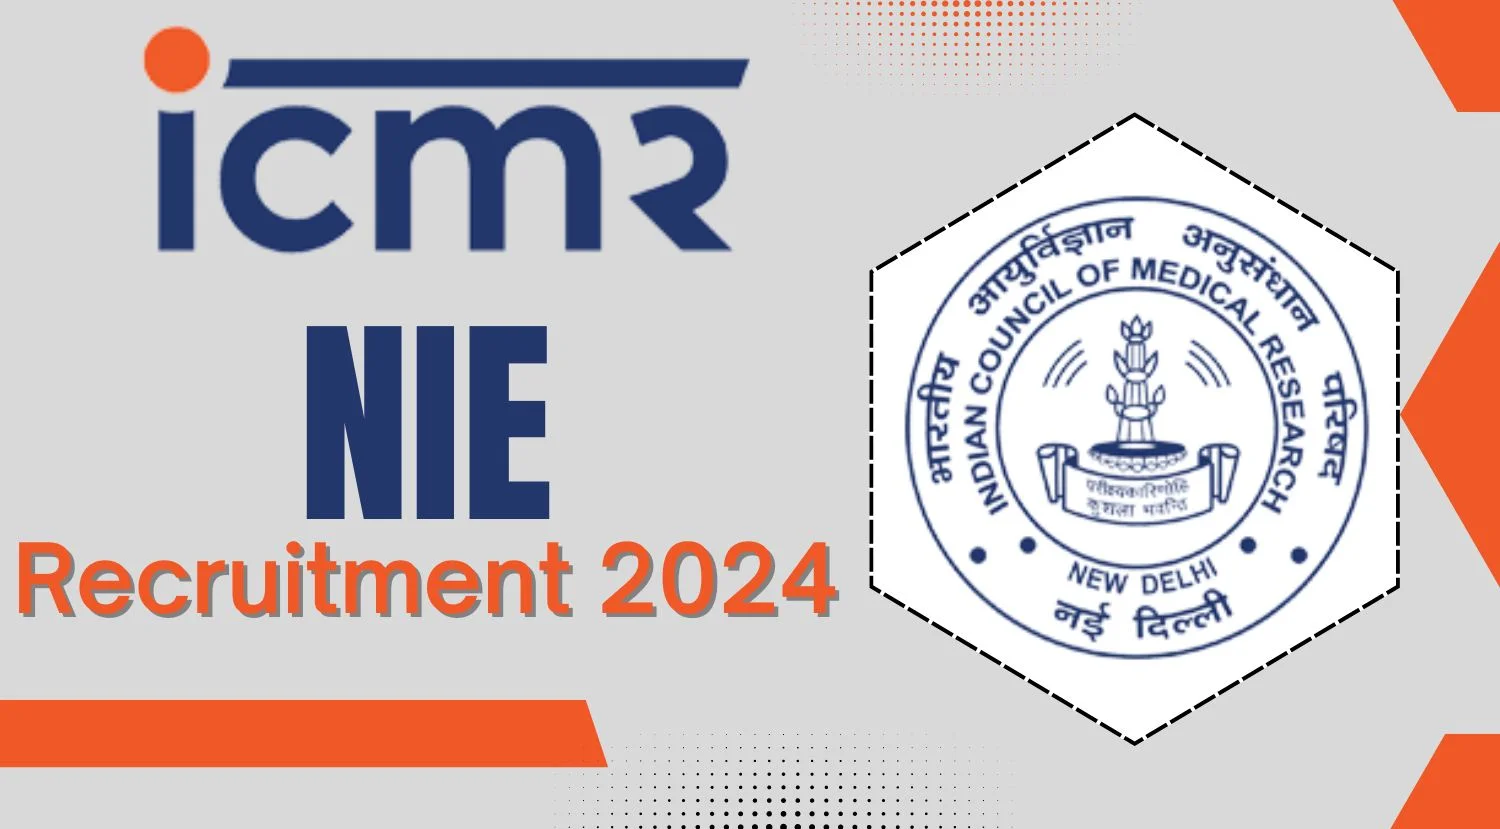 ICMR-NIE Recruitment 2024